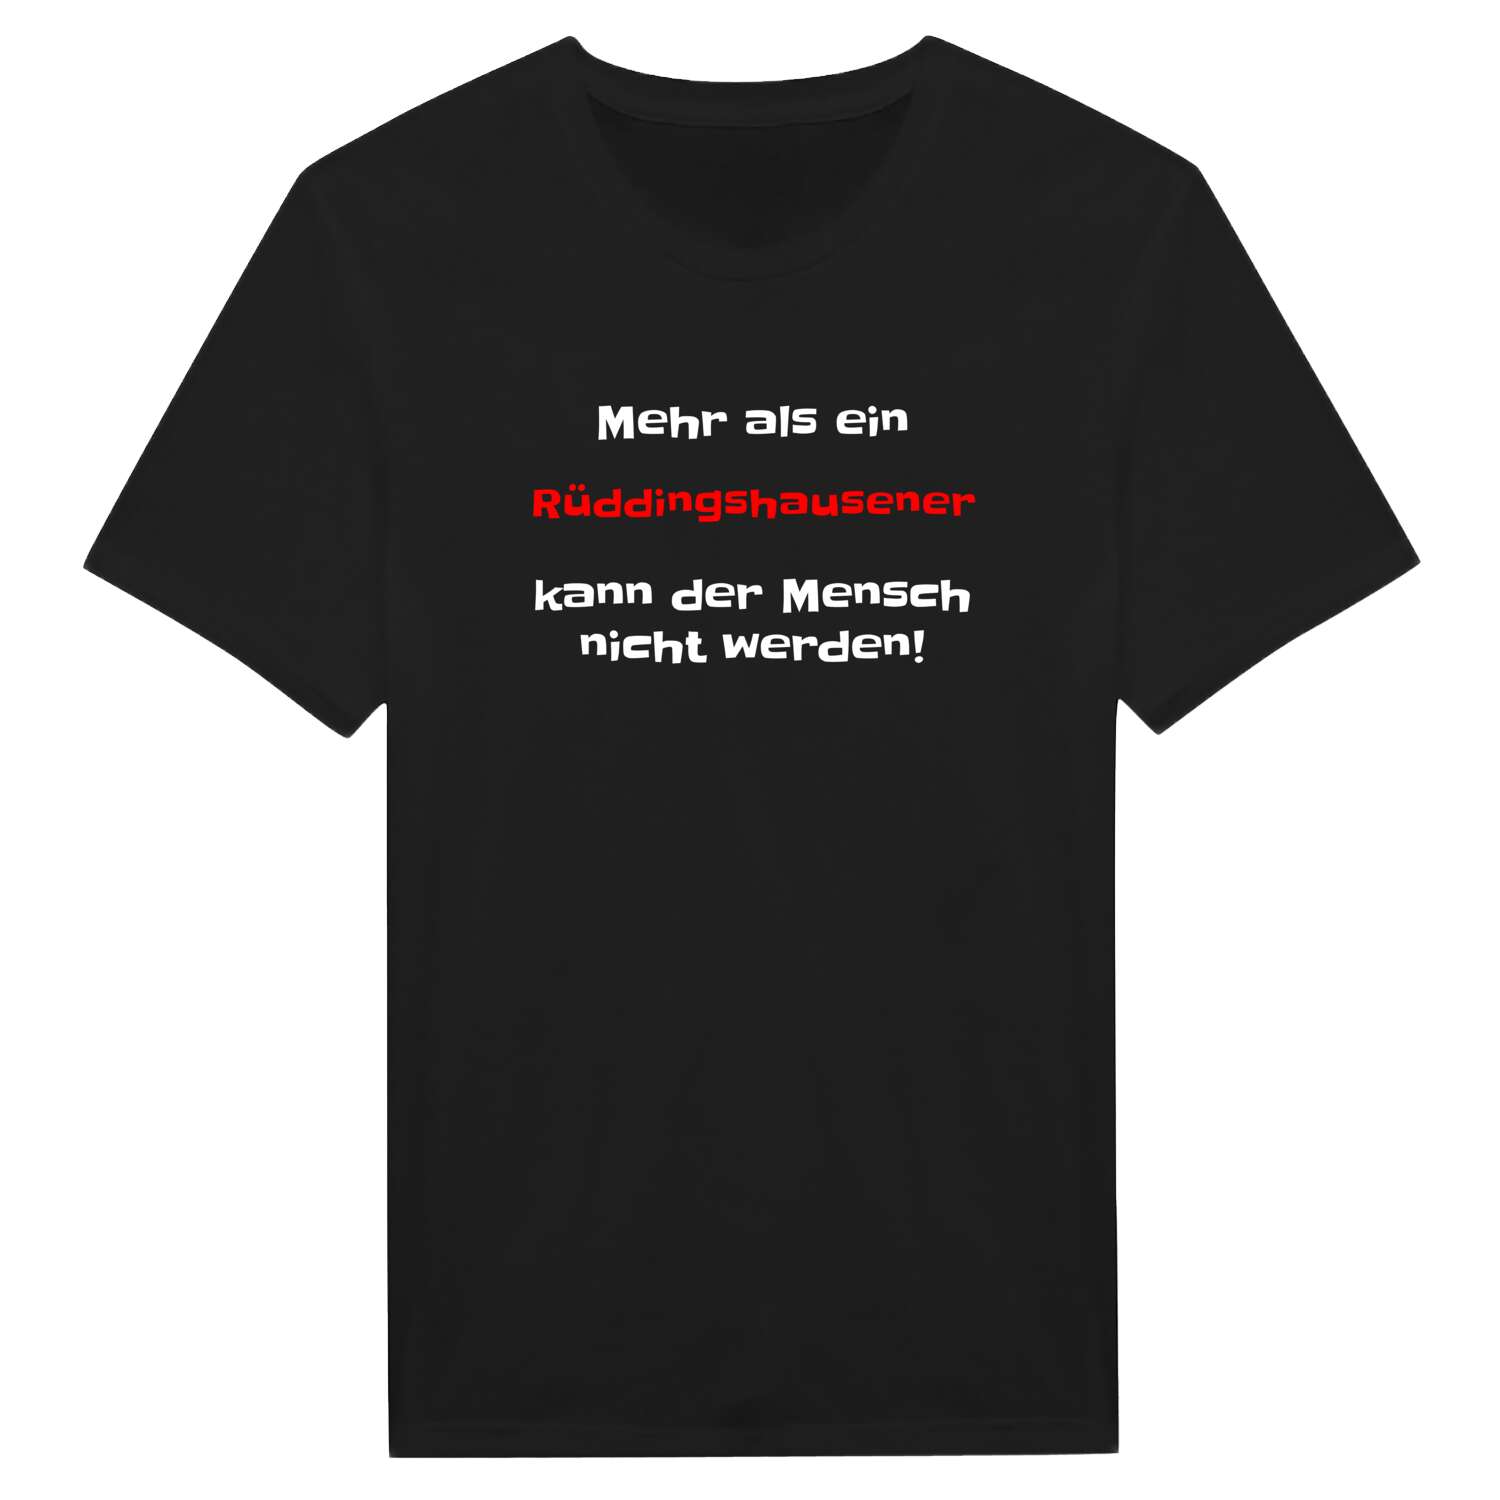 Rüddingshausen T-Shirt »Mehr als ein«